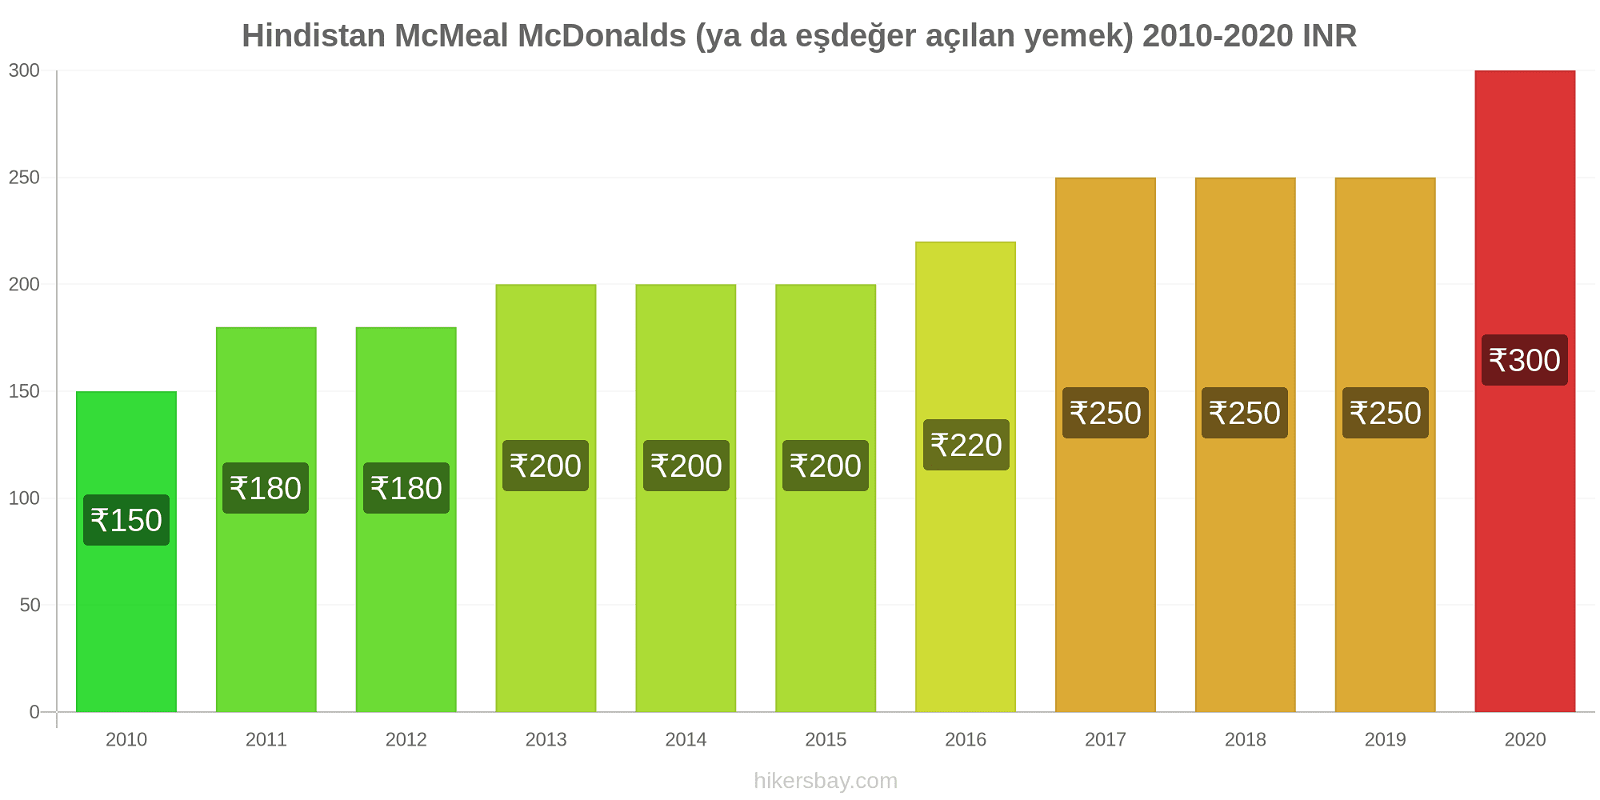 Hindistan fiyat değişiklikleri McMeal McDonalds (ya da eşdeğer açılan yemek) hikersbay.com